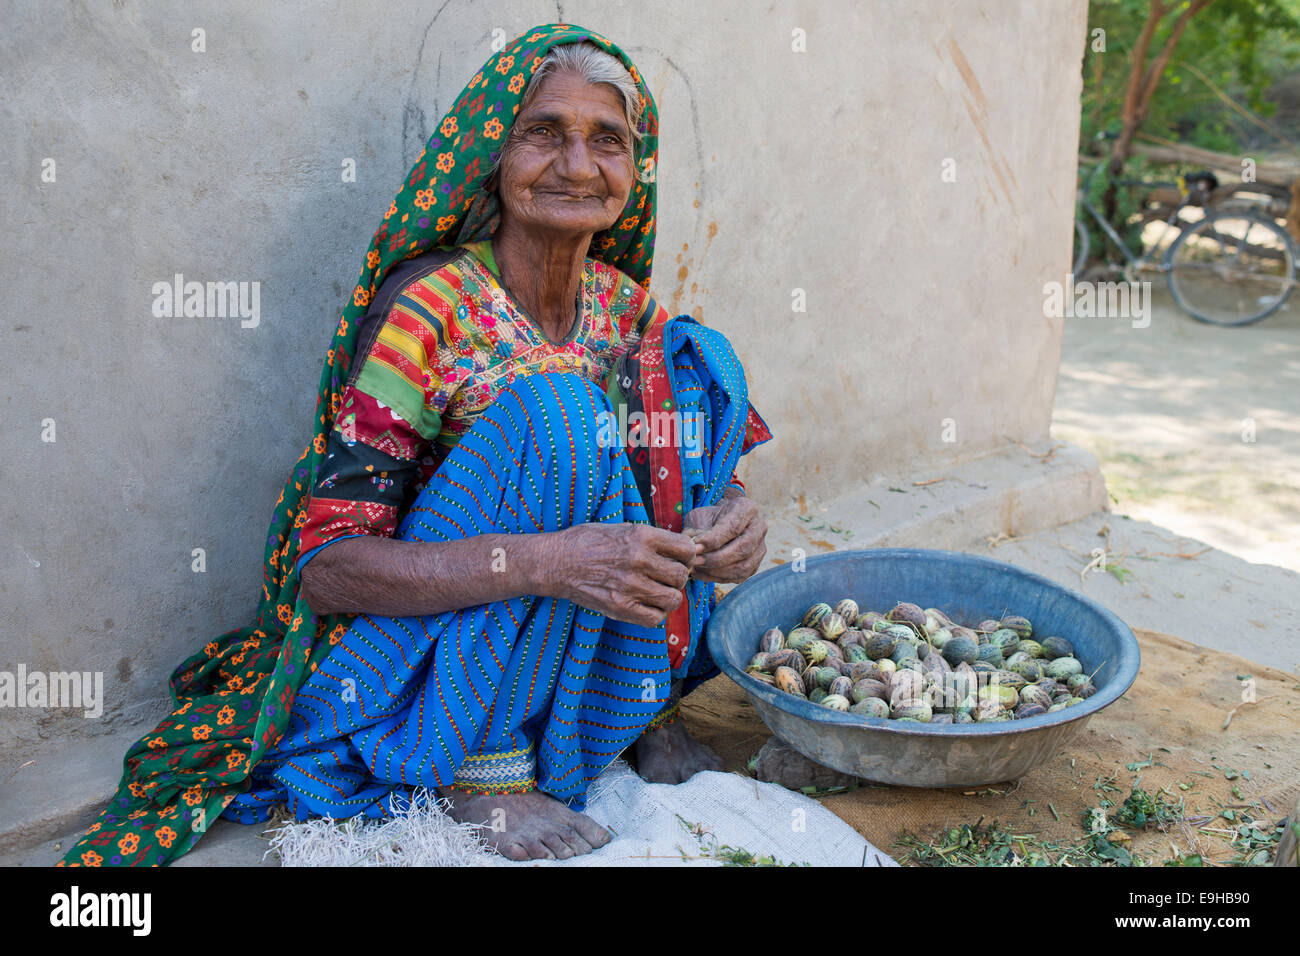 Eine freundliche ältere Frau in traditioneller Kleidung, sitzen auf dem Boden, die Sortierung kleiner Melonen, Rann Of Kutch, Gujarat, Indien Stockfoto